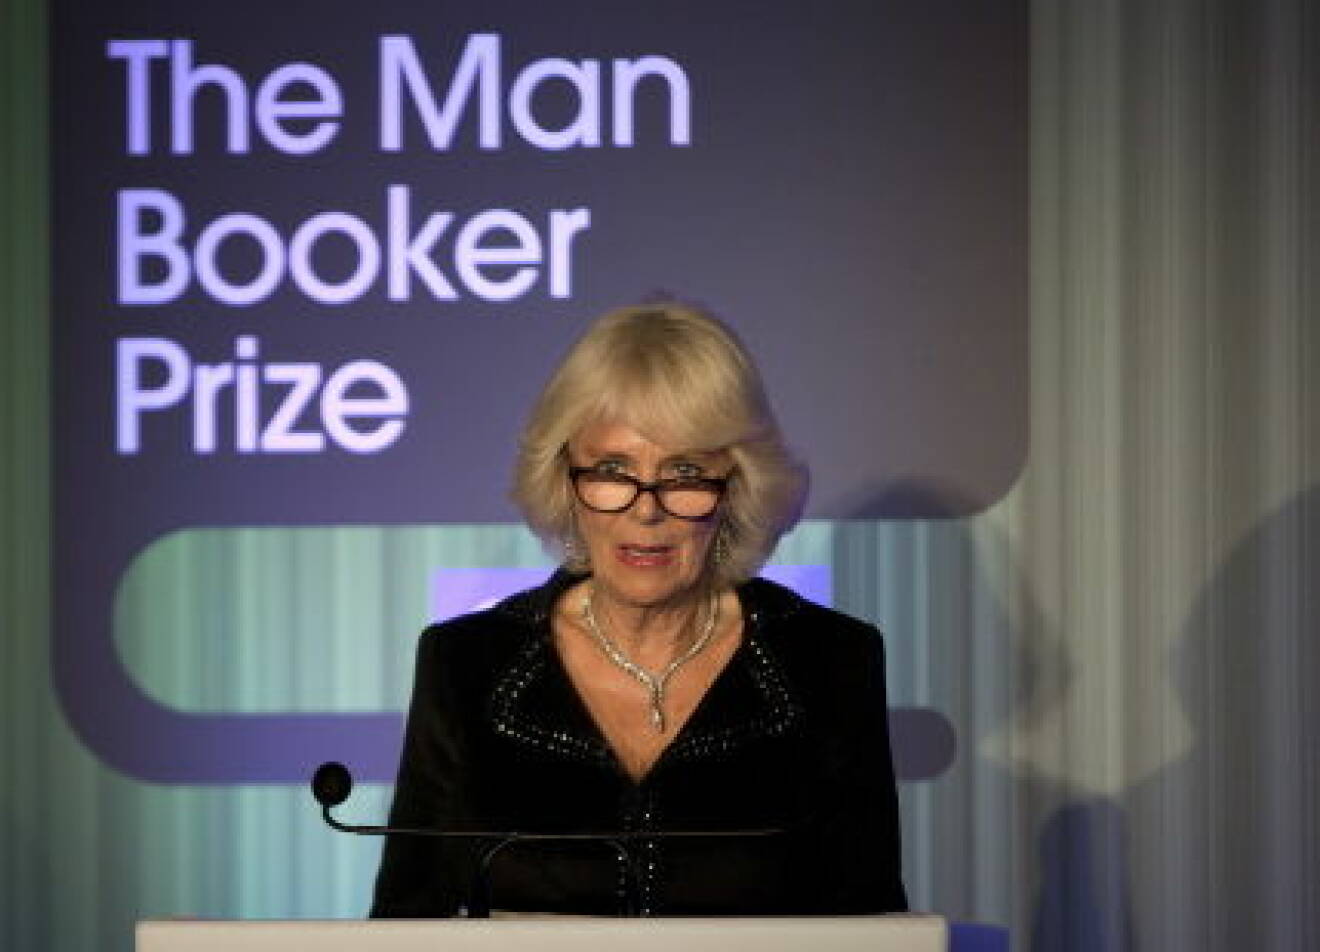 Man-Booker Prize 2014